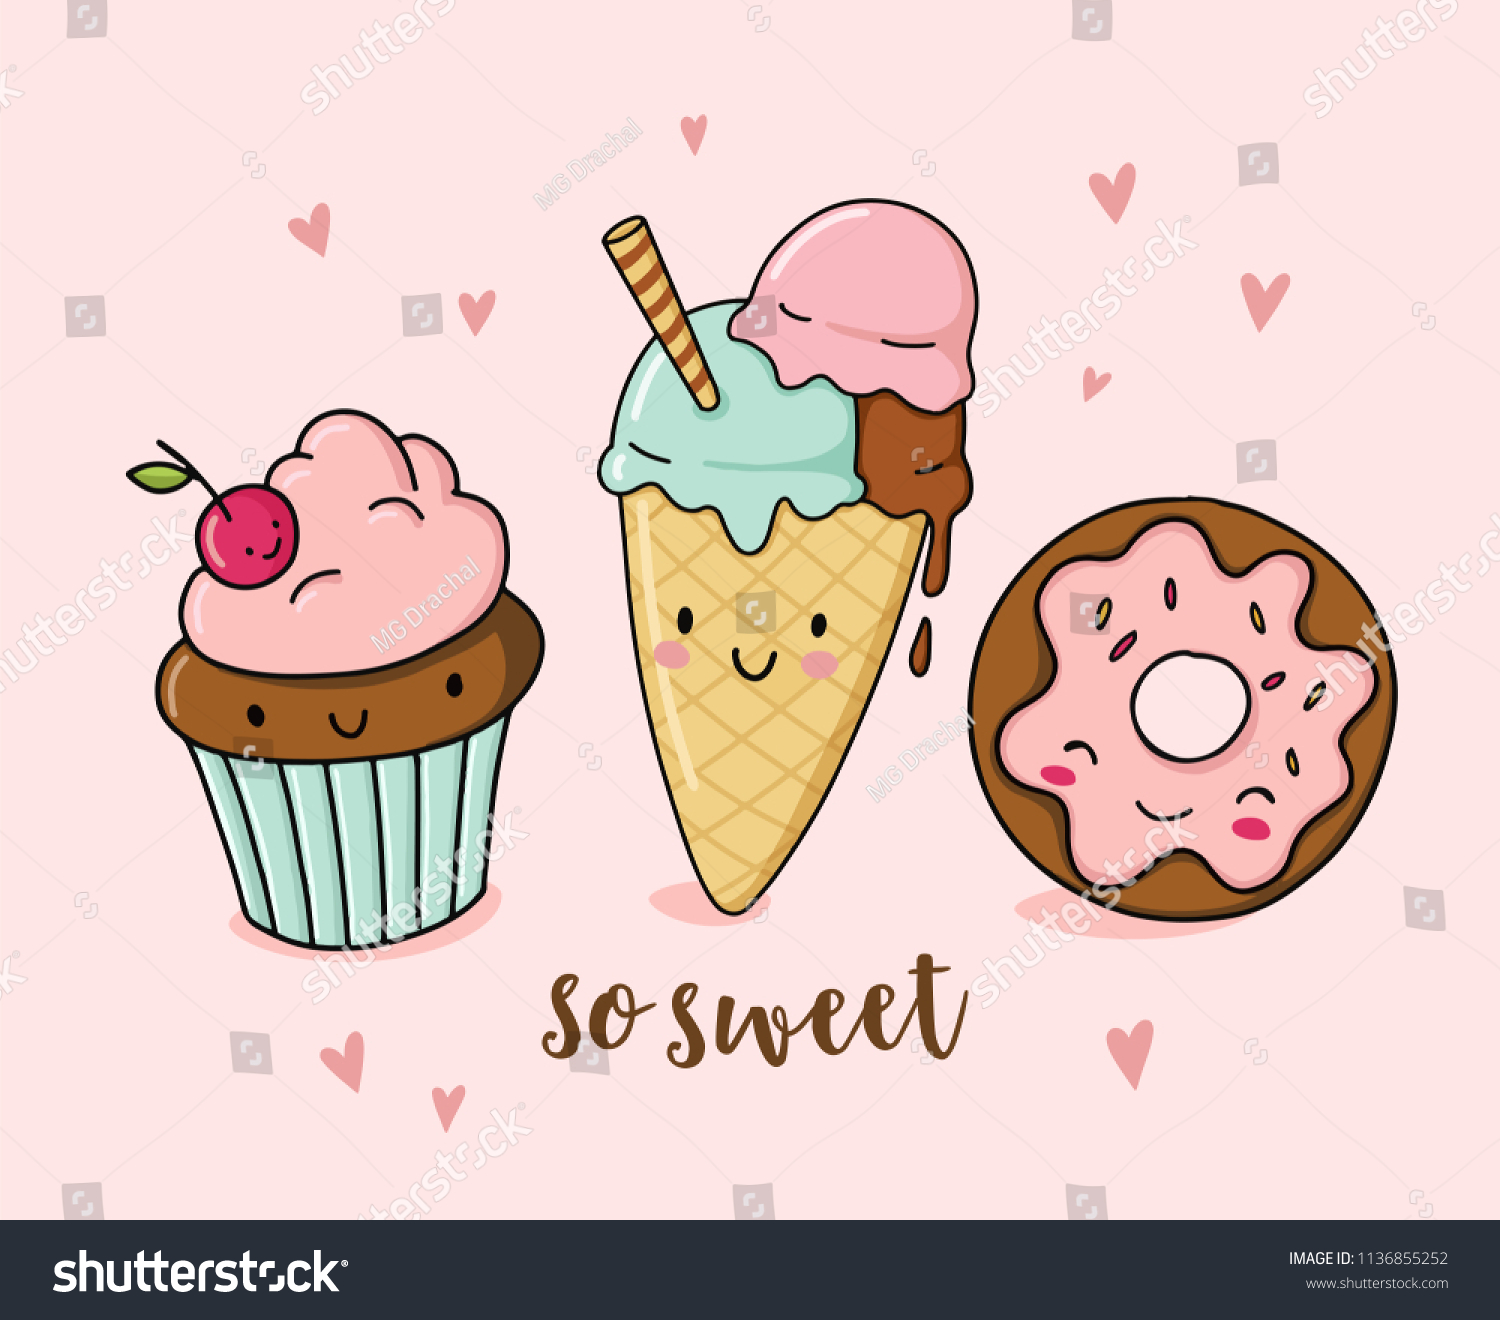 アイスクリーム カップケーキ ドーナツを使ったかわいいおかしな食べ物イラスト 漫画のデザートキャラクター のベクター画像素材 ロイヤリティフリー